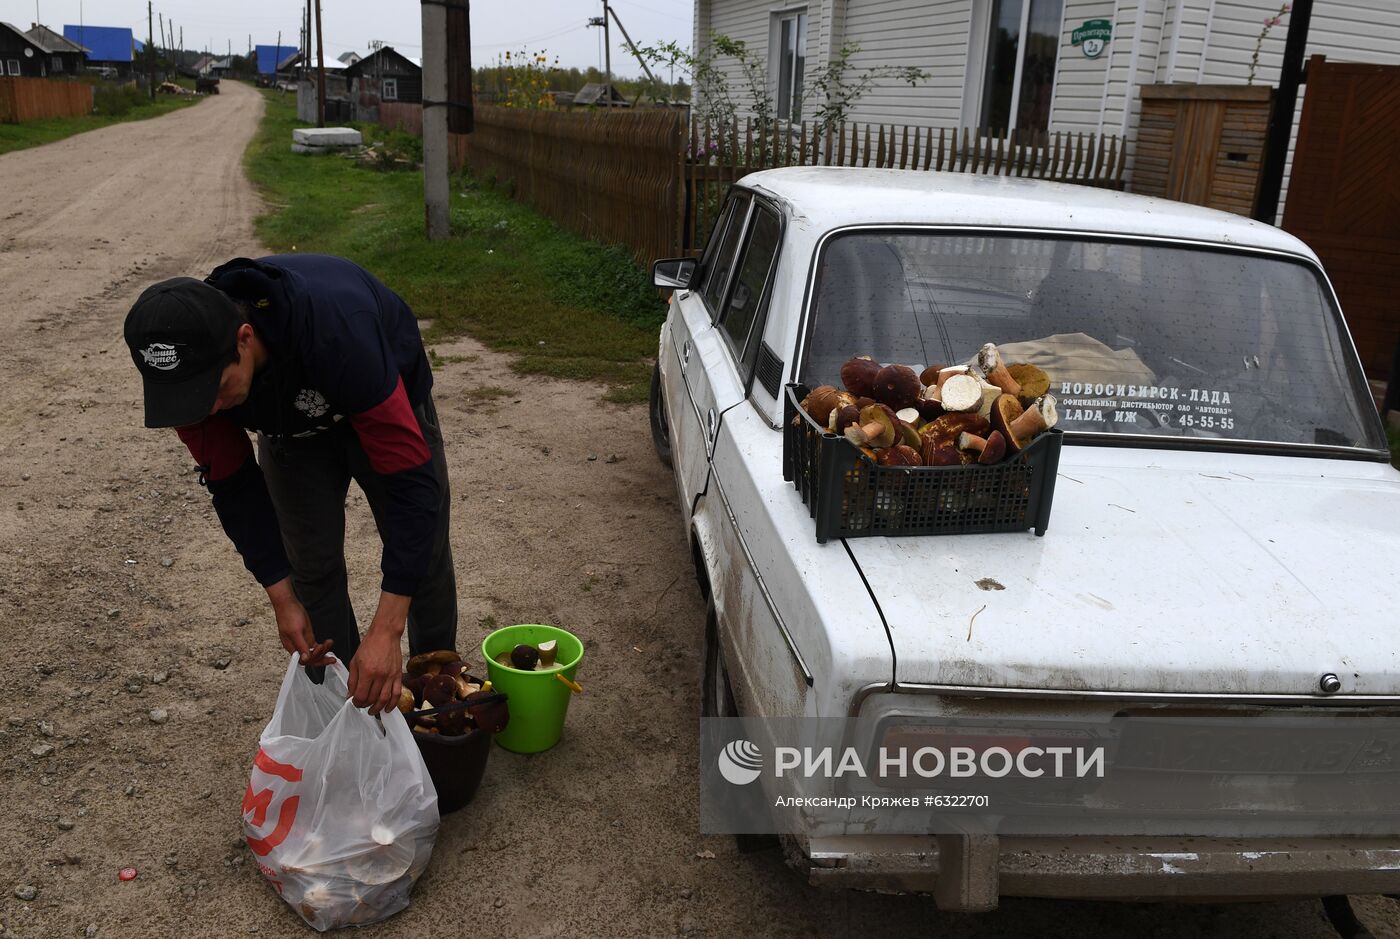 Сбор и заготовка грибов в селе Юрт-Акбалык